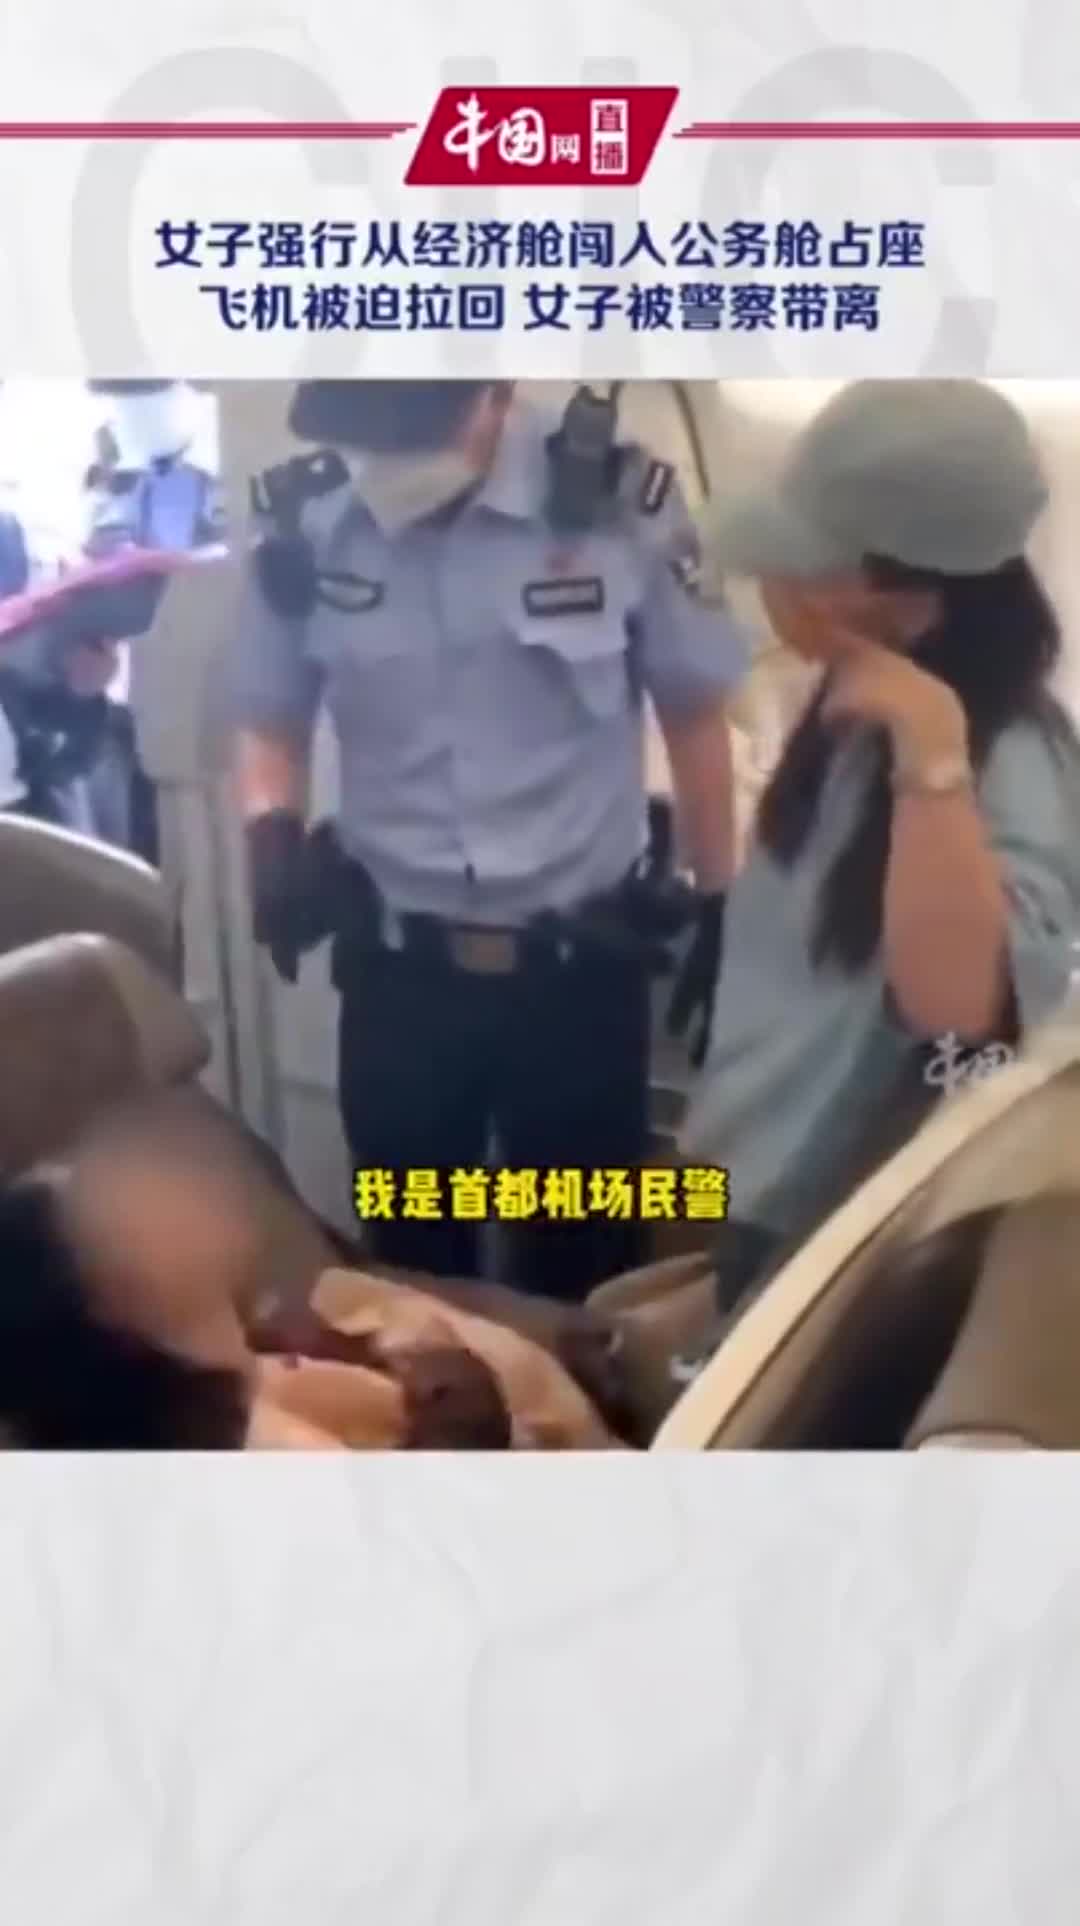 首都机场一女子占座被航司拒载致航班滑回,警方通报